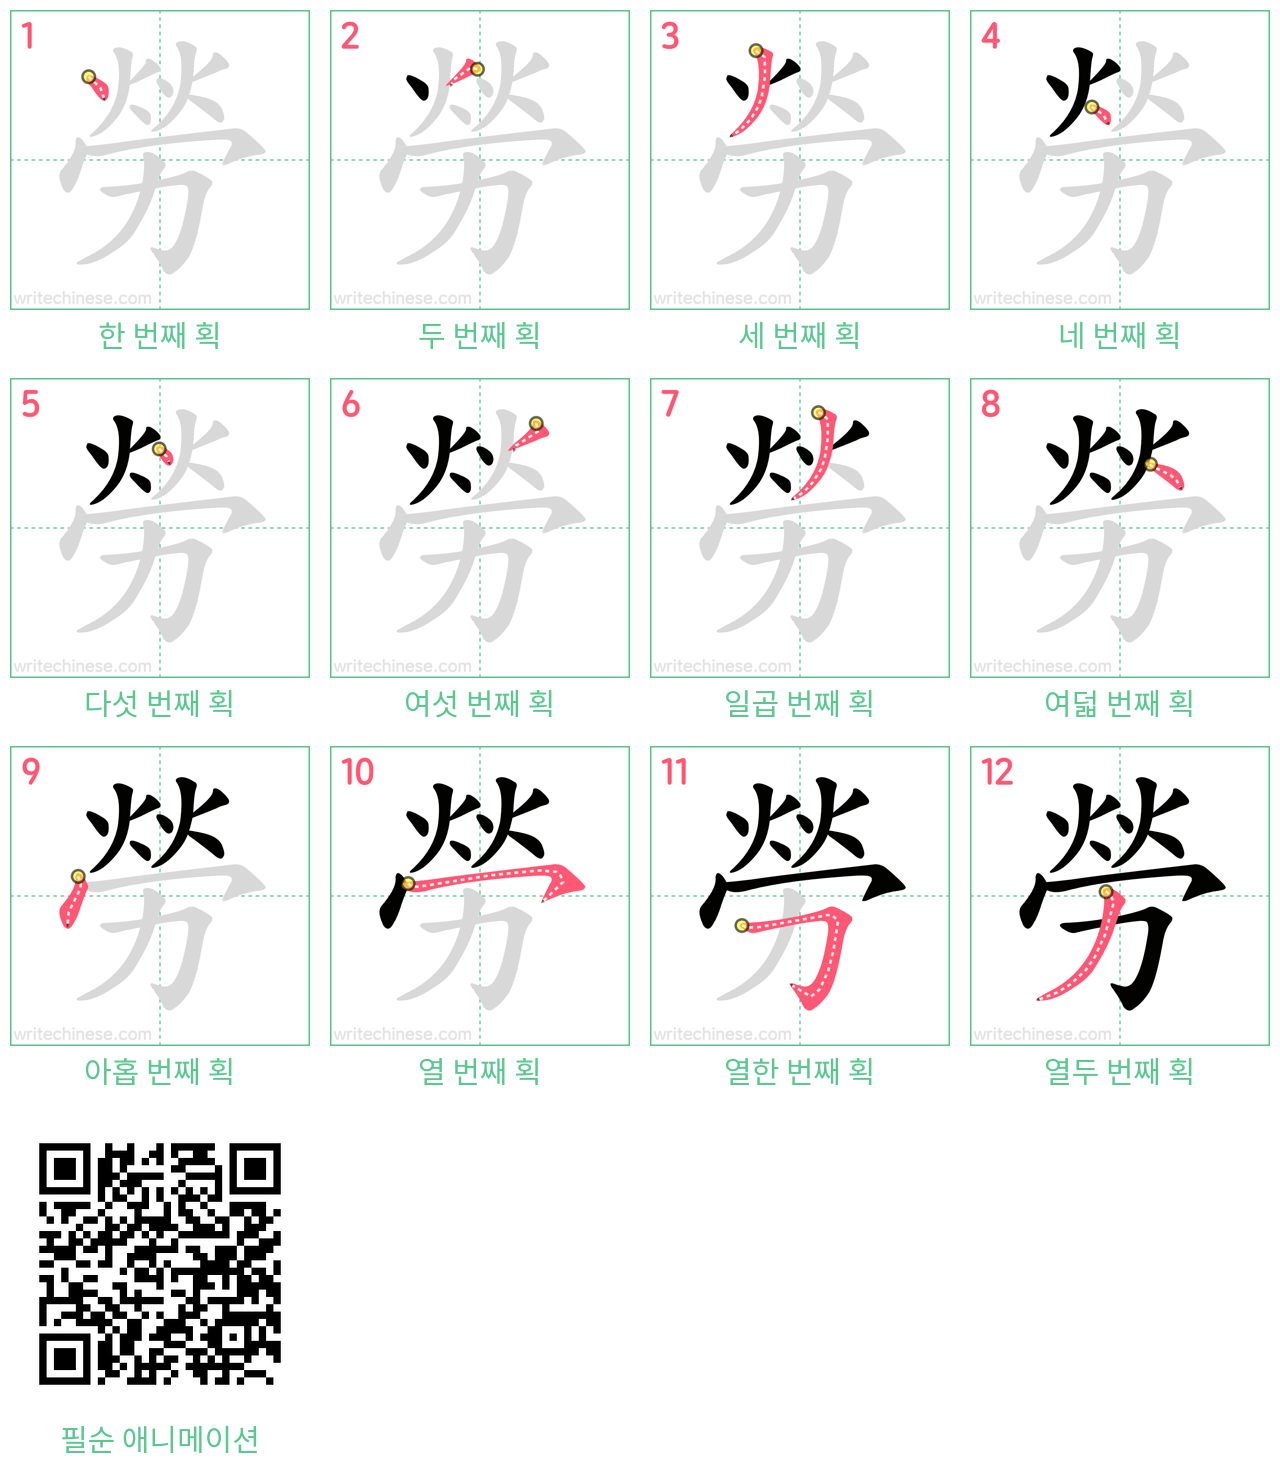 勞 step-by-step stroke order diagrams